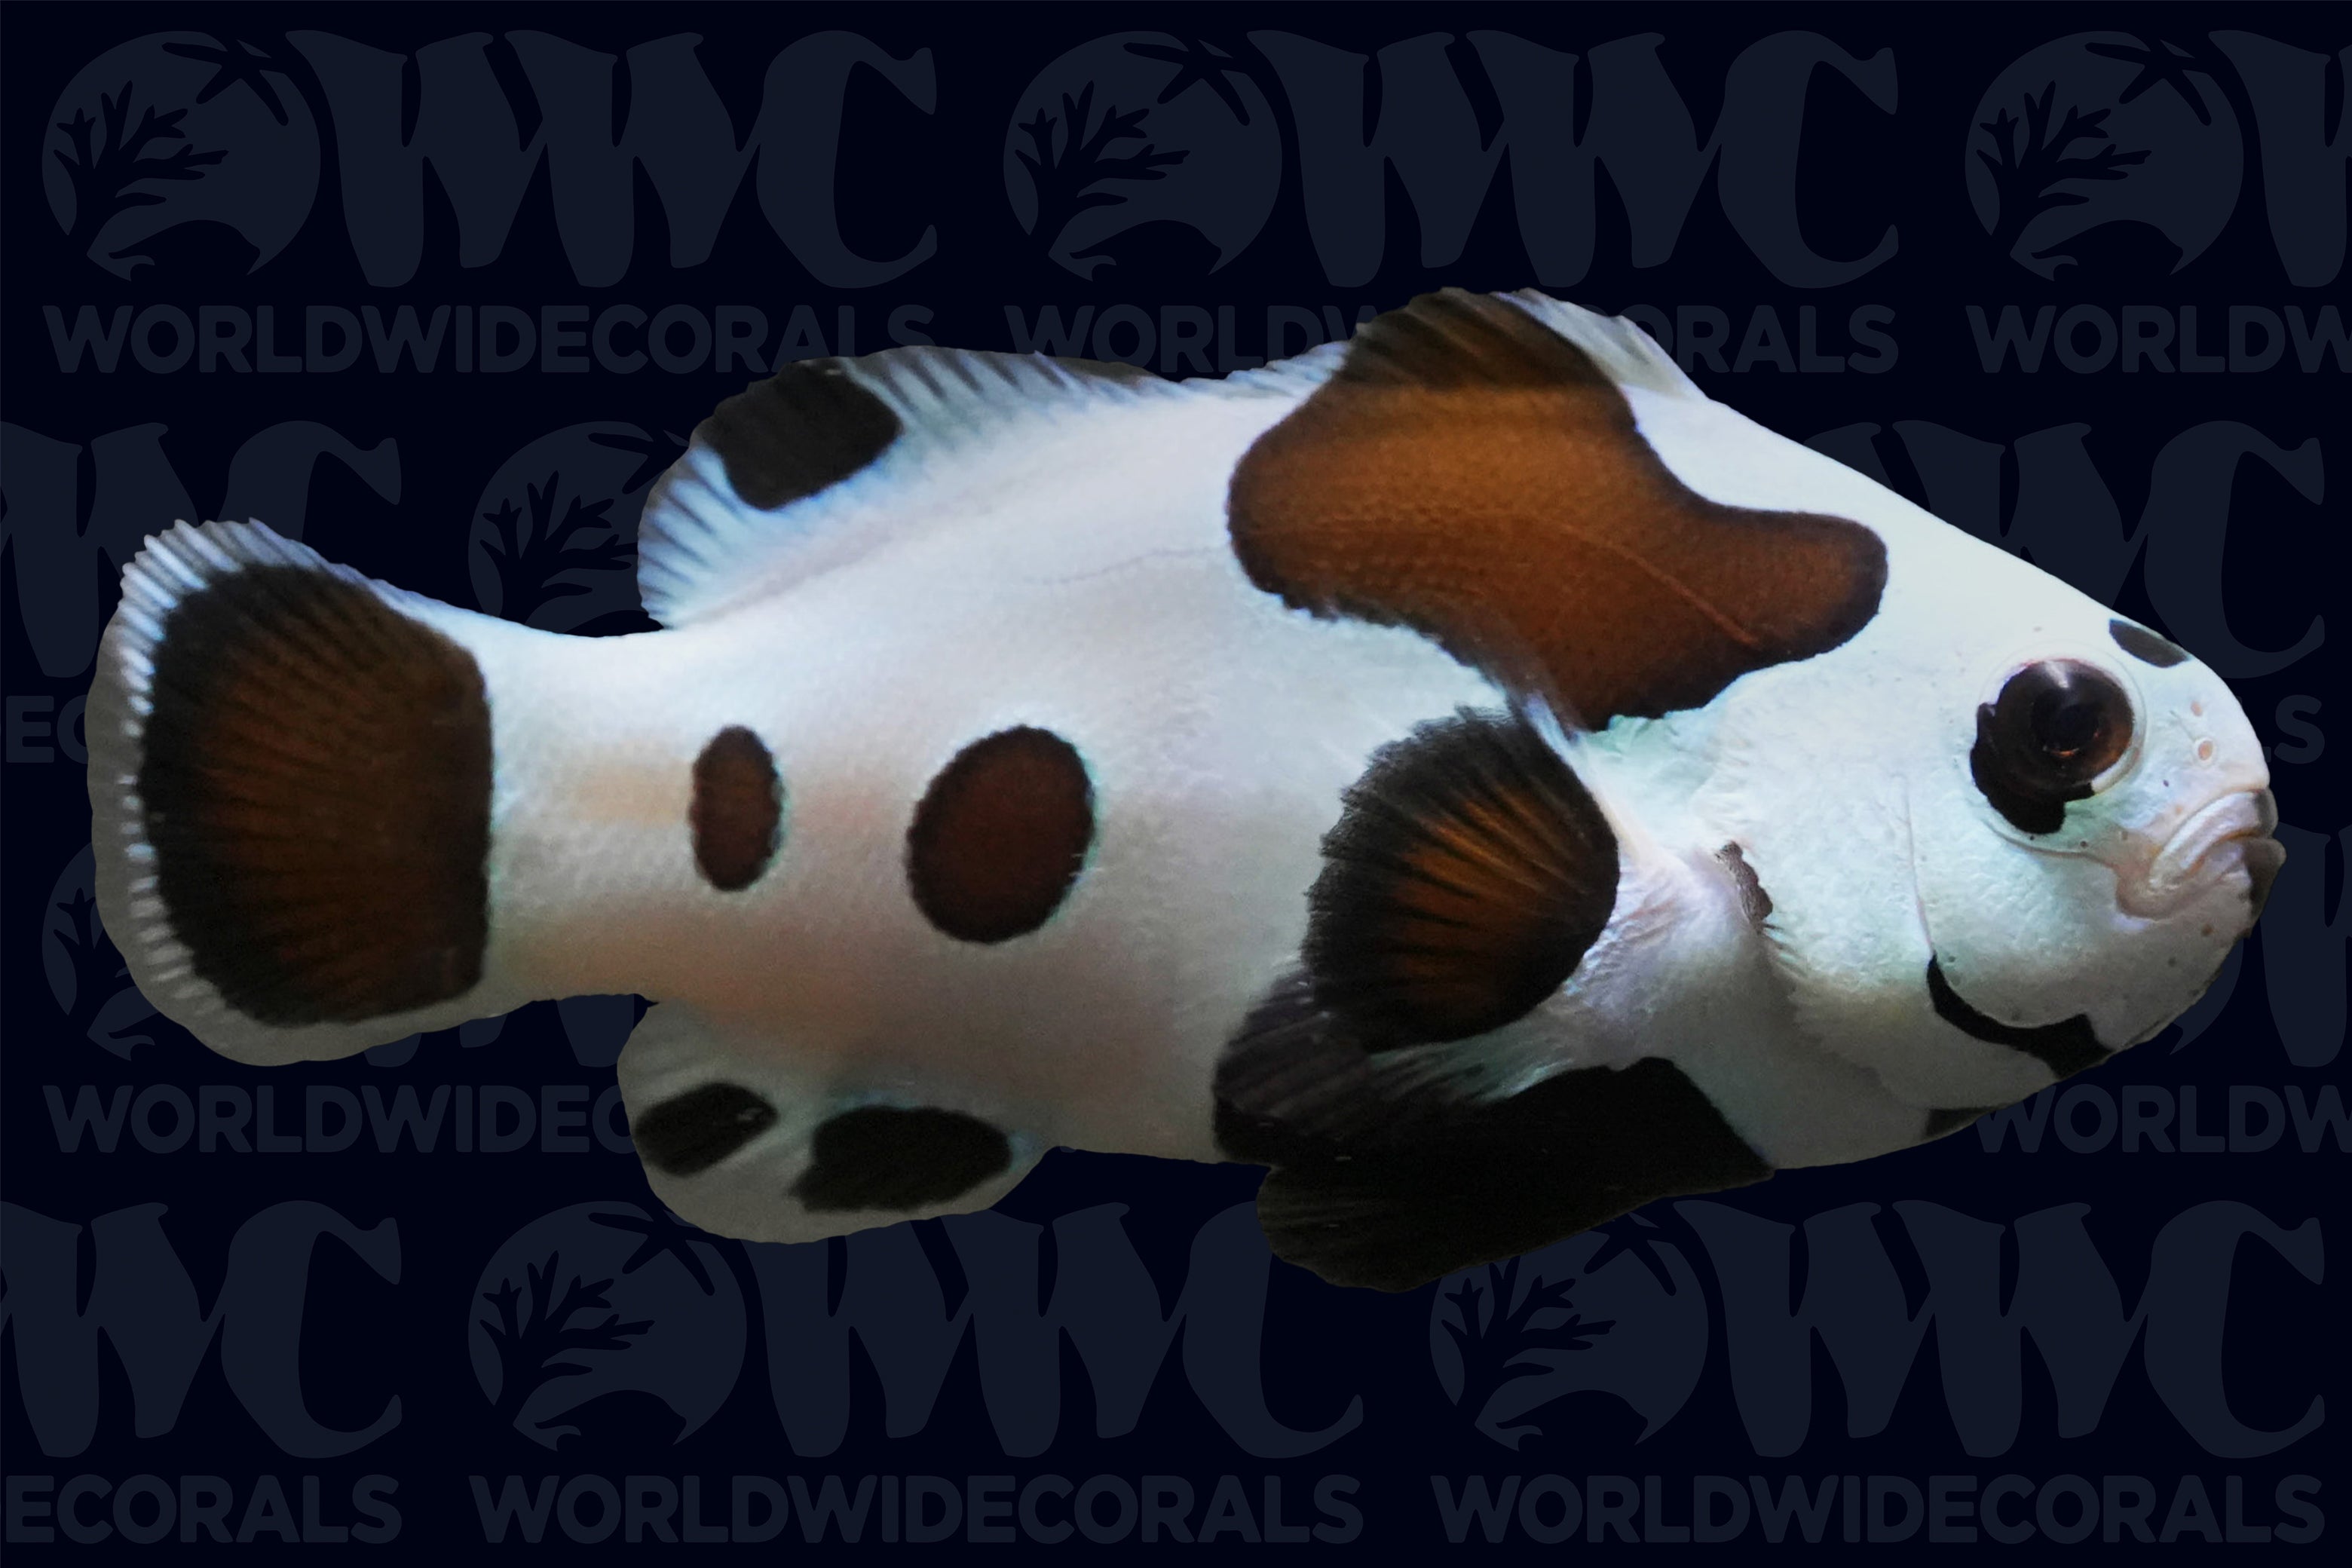 Black Storm Ocellaris Clownfish - Aquacultured - USA